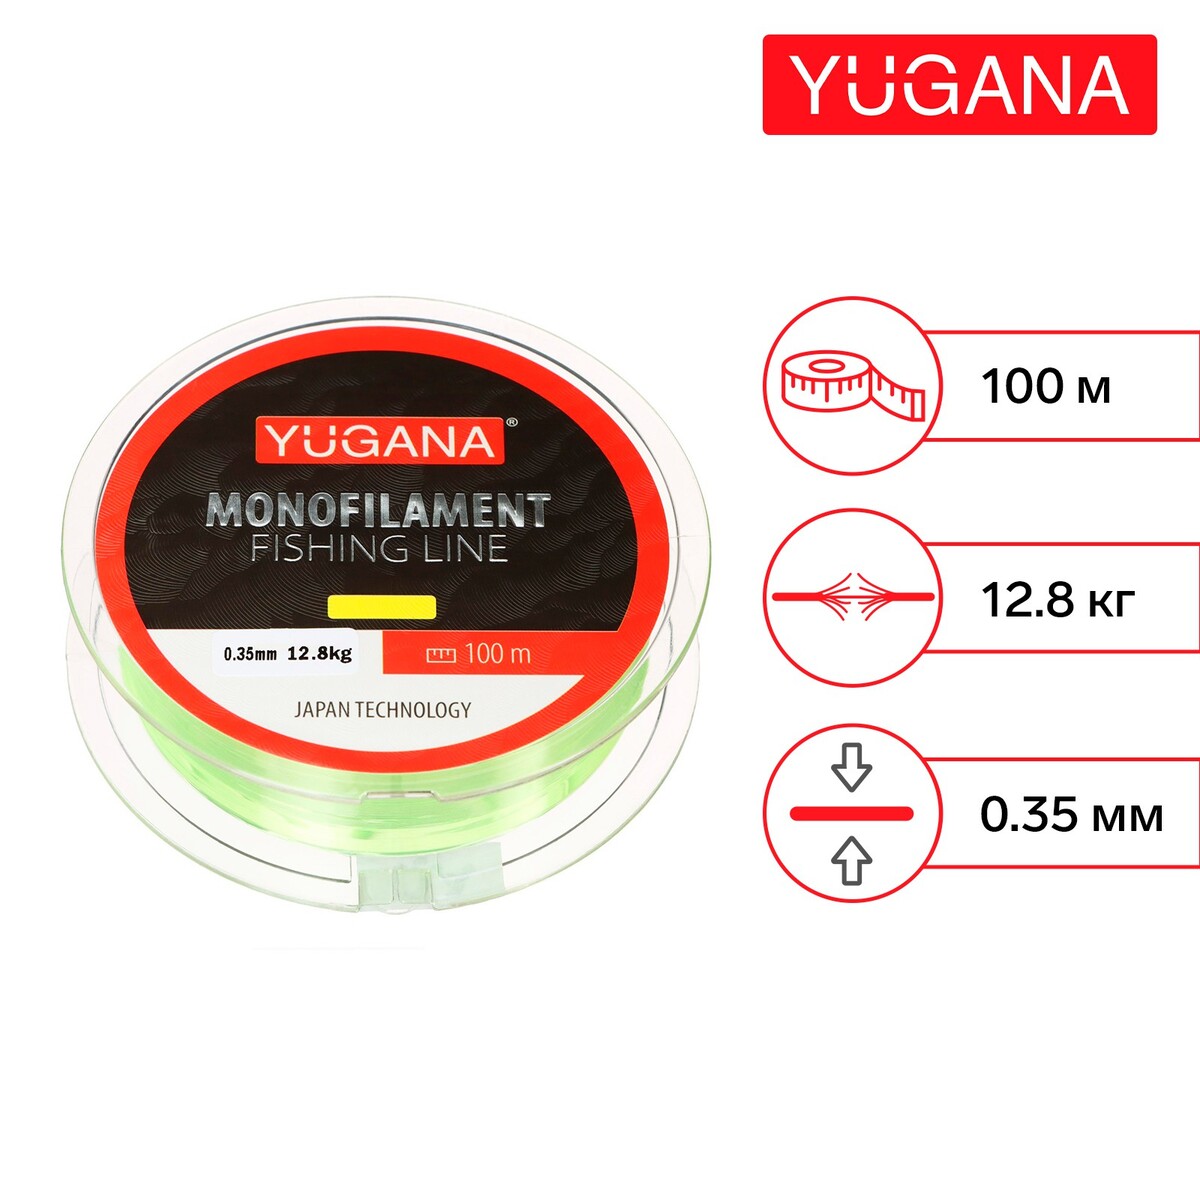 Леска монофильная yugana, диаметр 0.35 мм, тест 12.8 кг, 100 м, желтая YUGANA